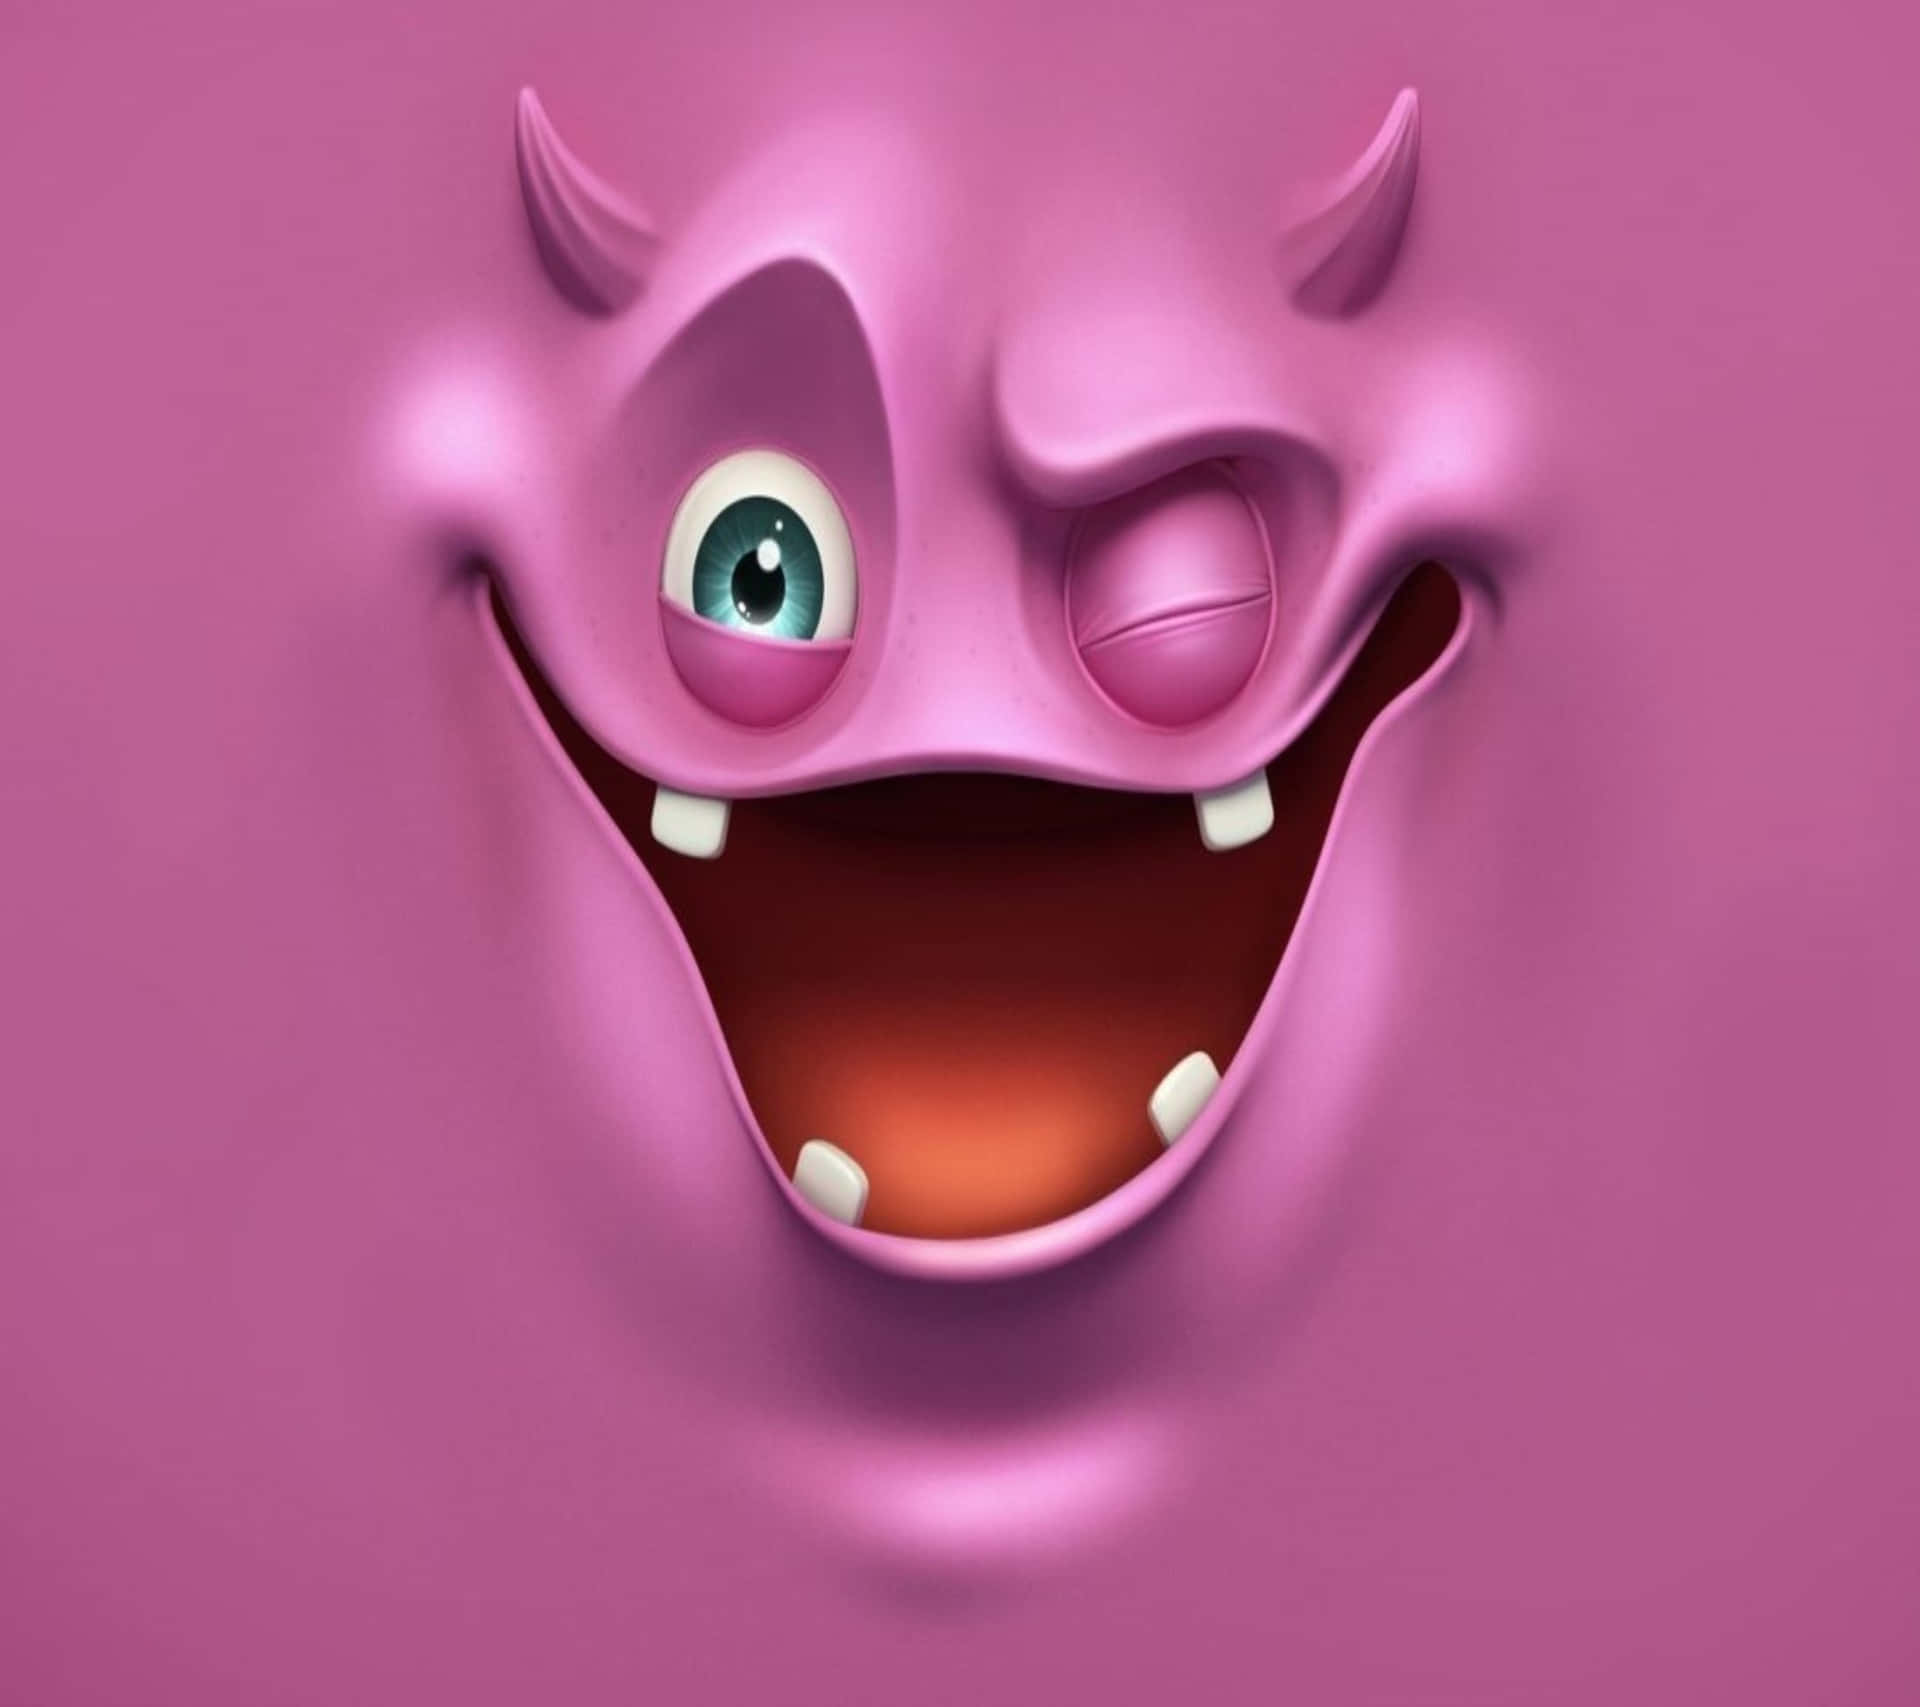 Get Creative With Your Halloween Monster Look! Wallpaper